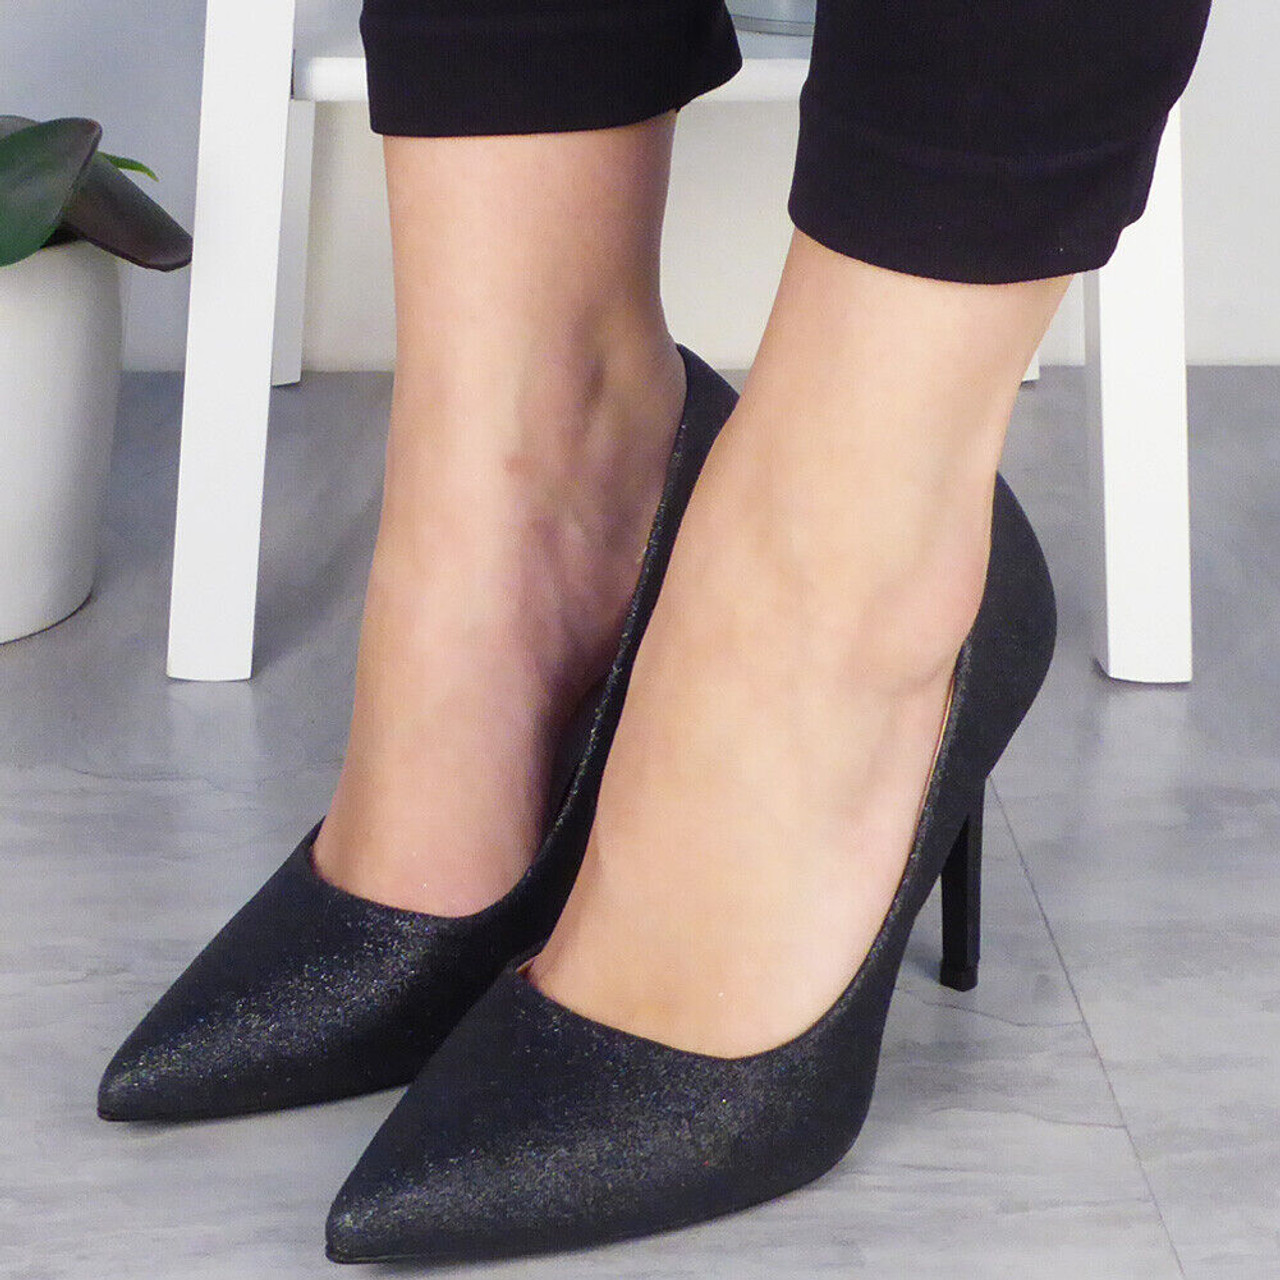 Shoetopia Women's & Girl's Black Slim Heels Textured Pumps : Amazon.in:  Shoes & Handbags